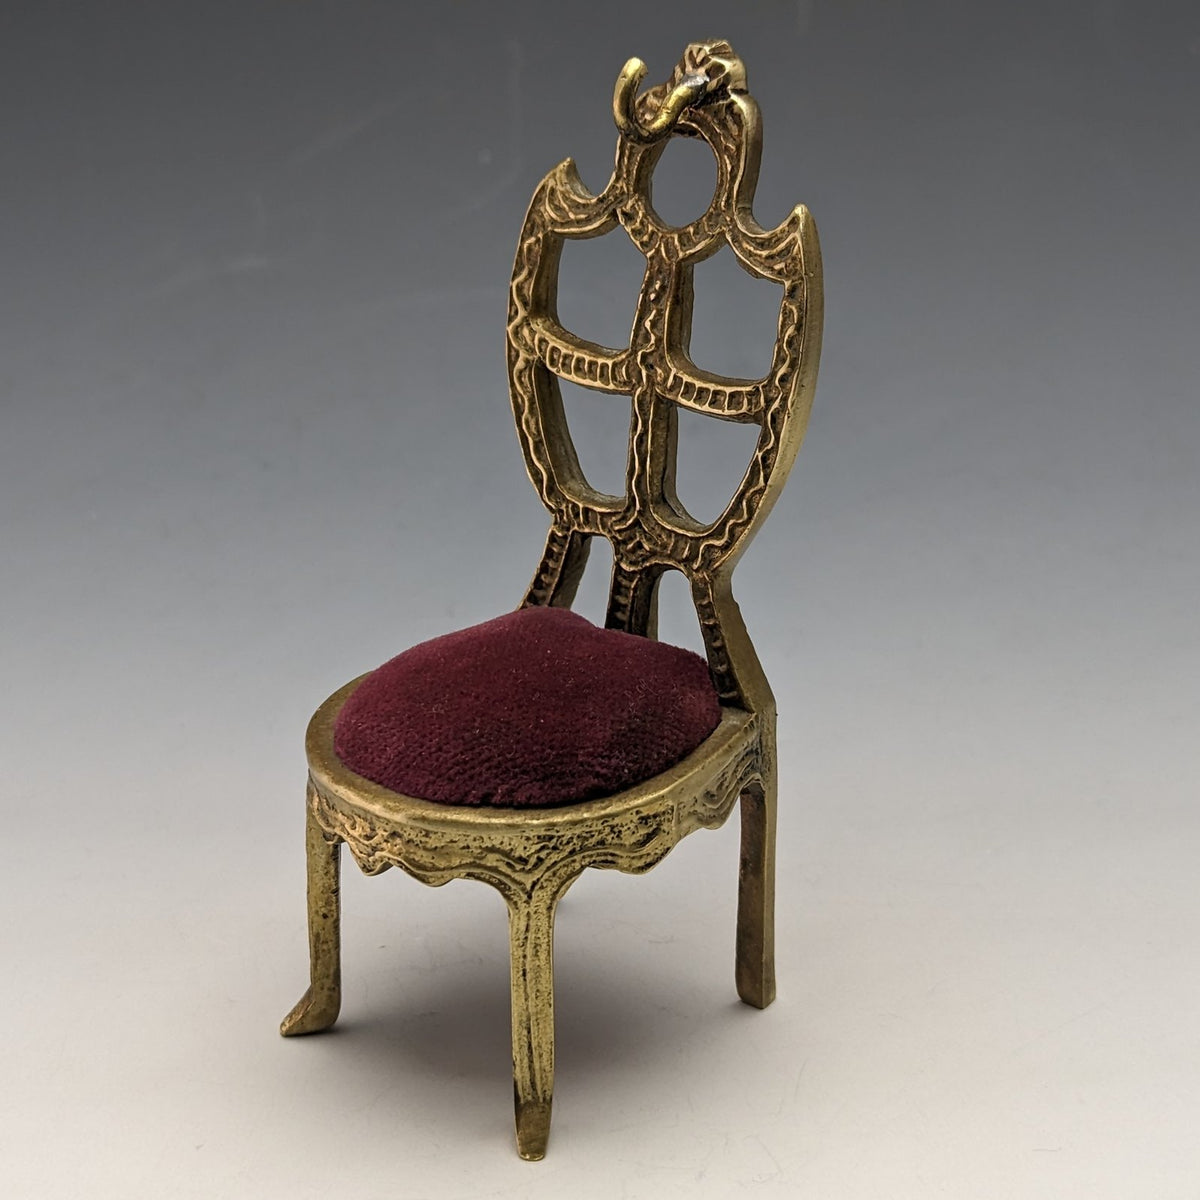 目立った傷や汚れのない美品機能1920年代 真鍮製 椅子型 懐中時計ホルダー ダークレッドシート